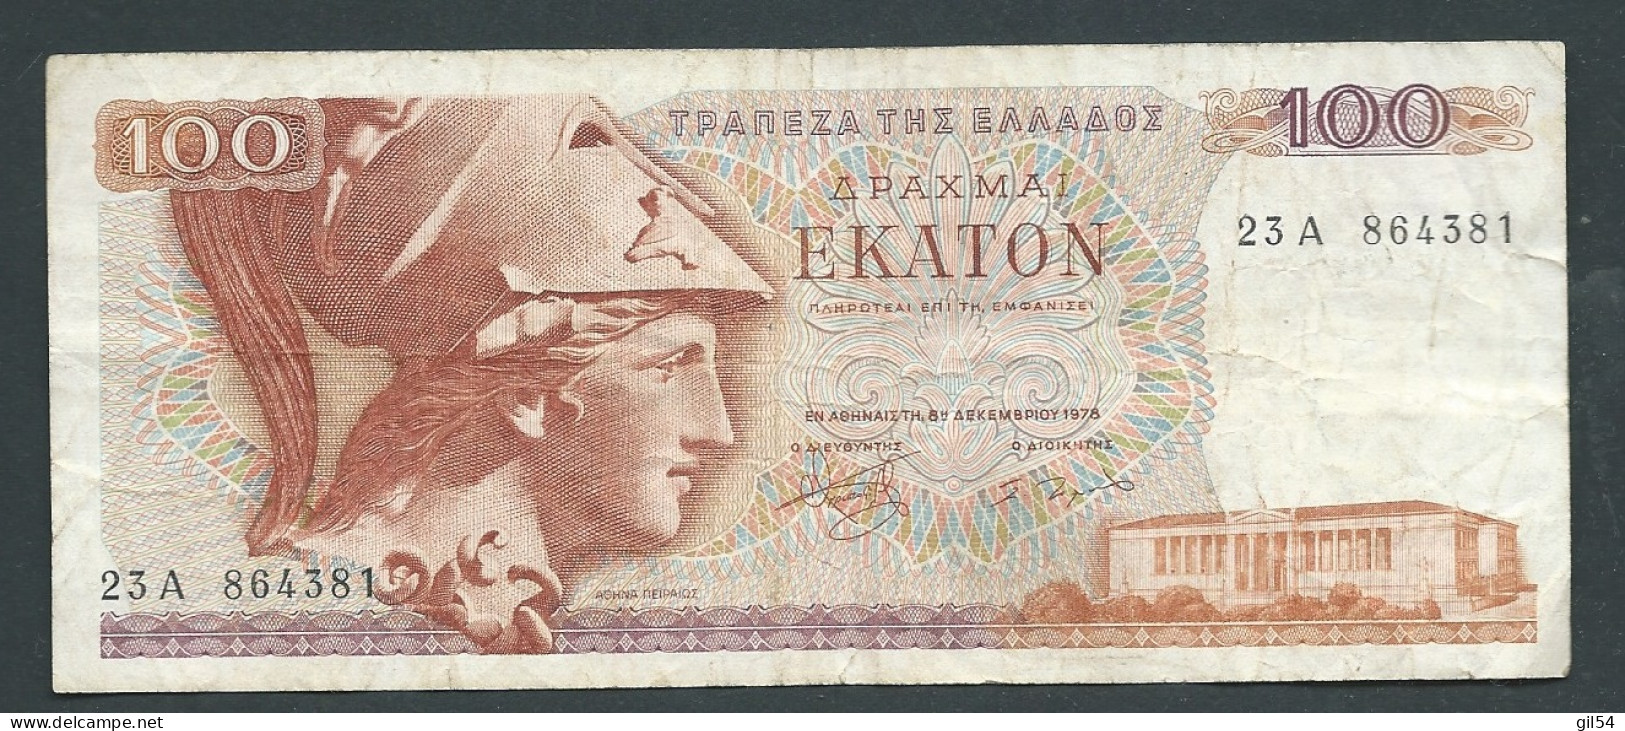 Grèce - Billet De 100 Drachmes 1978   -   23A864381-  Laura 10205 - Griekenland